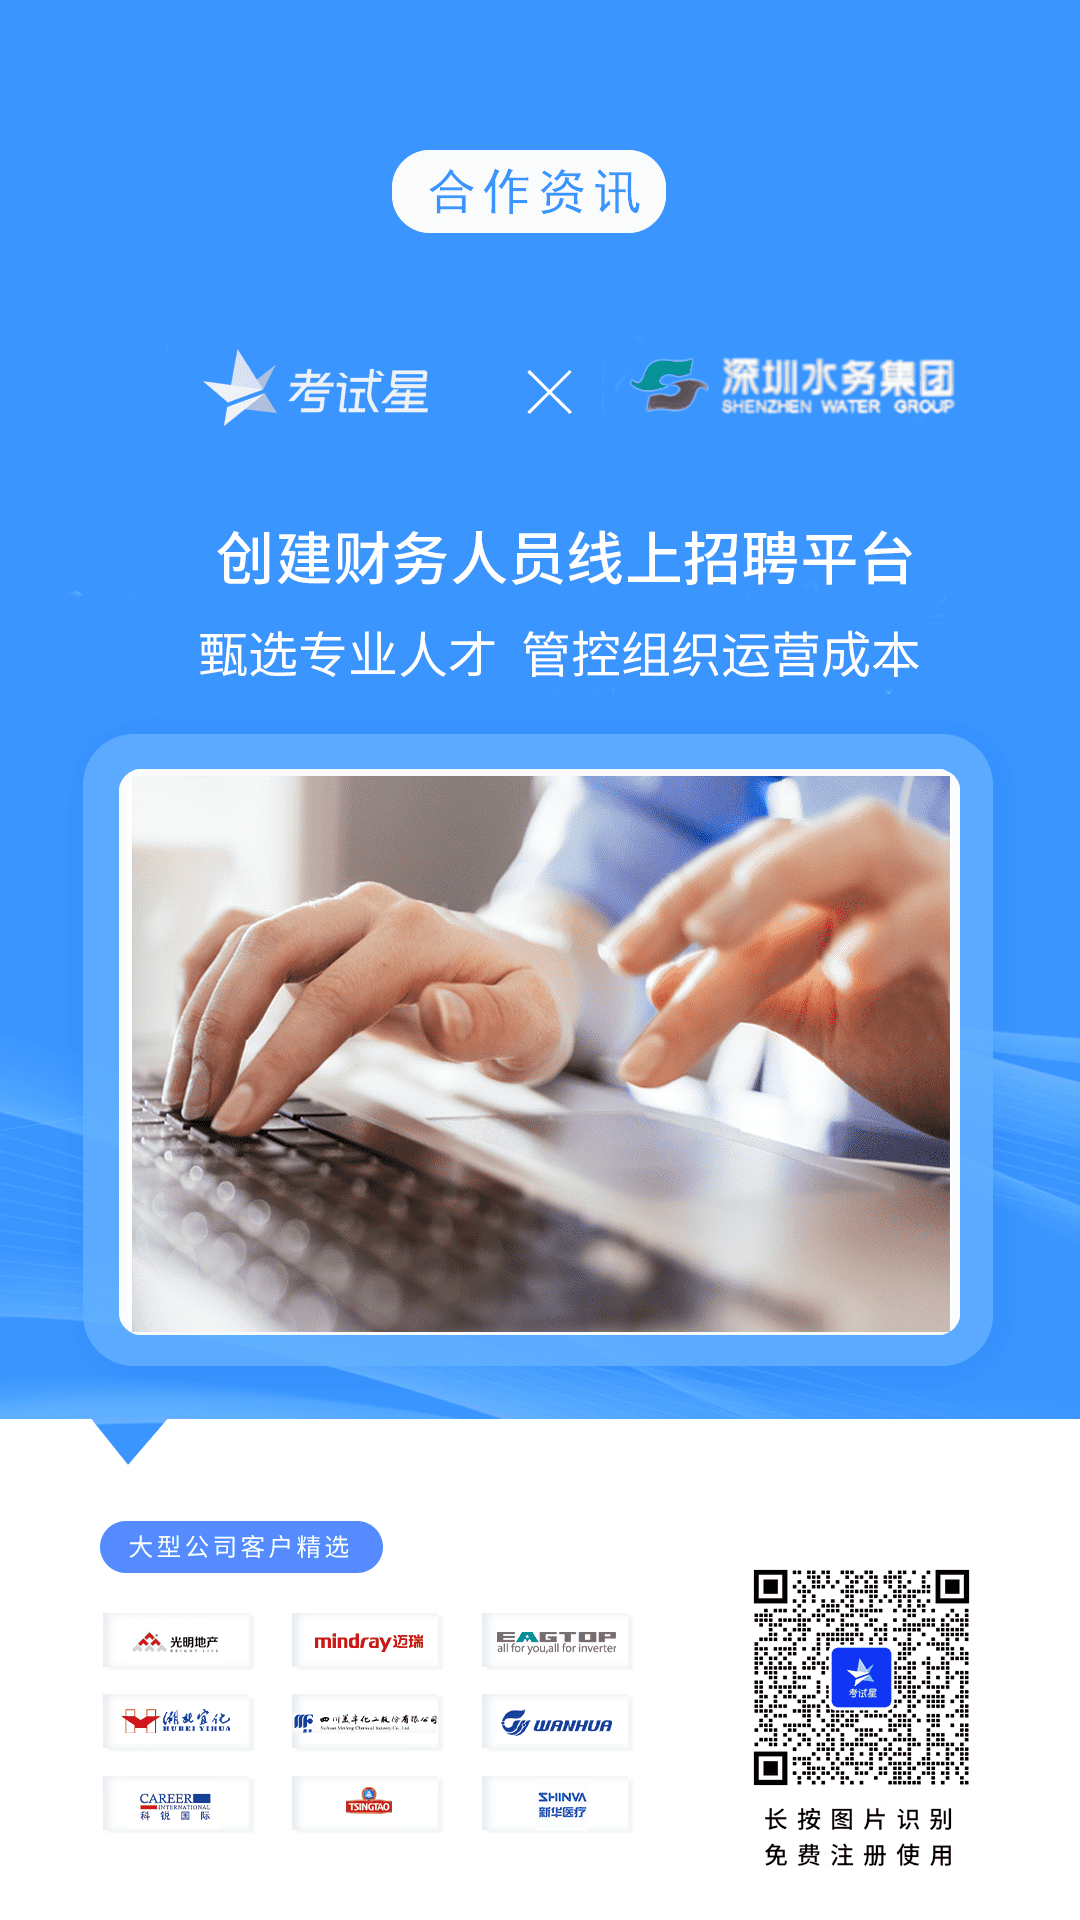 深圳水务集团-考试星线上招聘平台